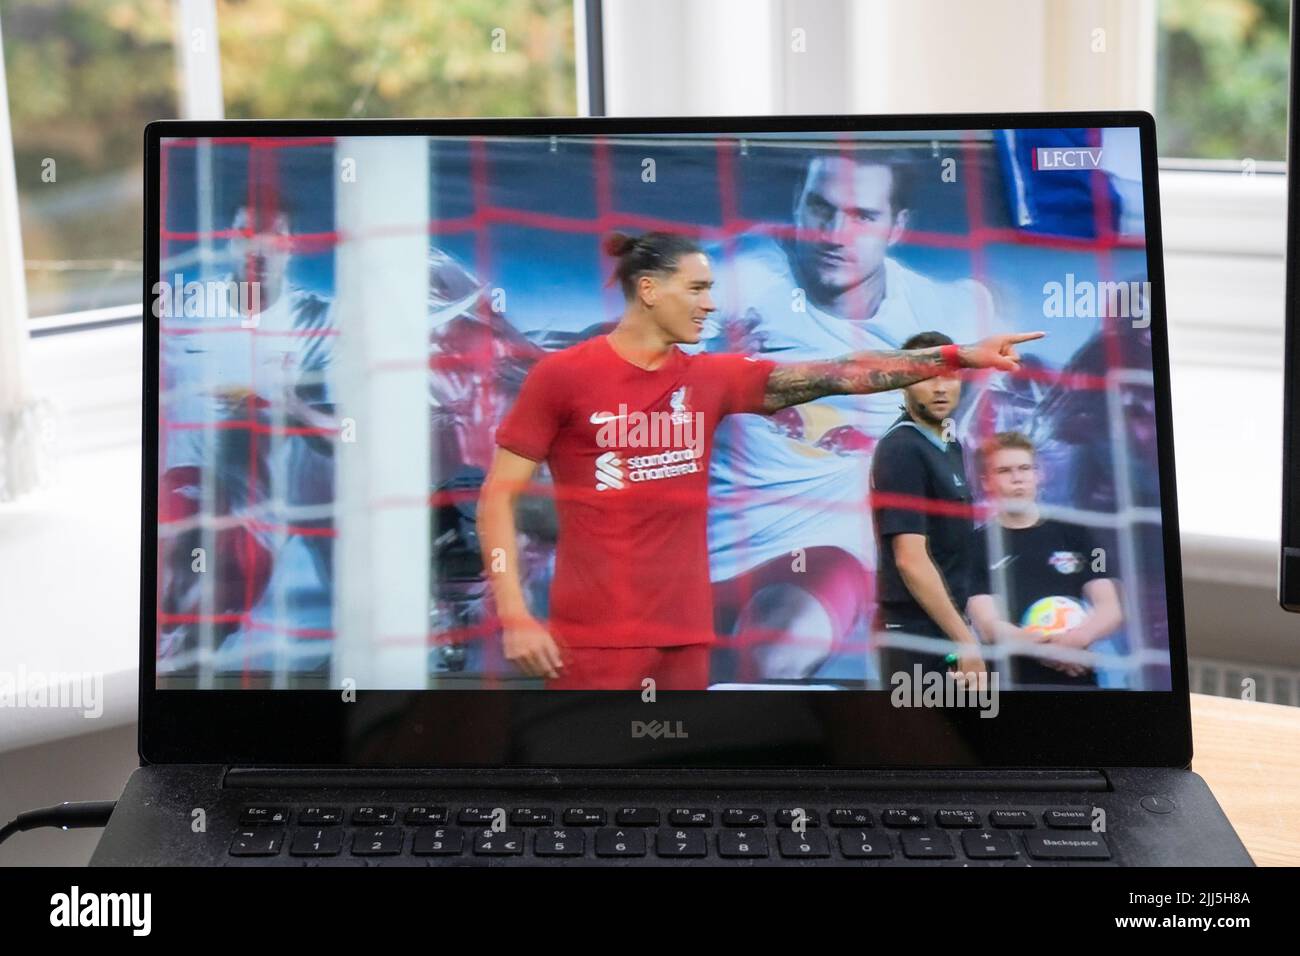 Darwin Nunez célèbre un but dans la victoire FC 5-0 de Liverpool contre RB Leipzig dans le 21 juillet 2022 pré-saison convivial sur LFC TV sur un écran d'ordinateur portable Banque D'Images